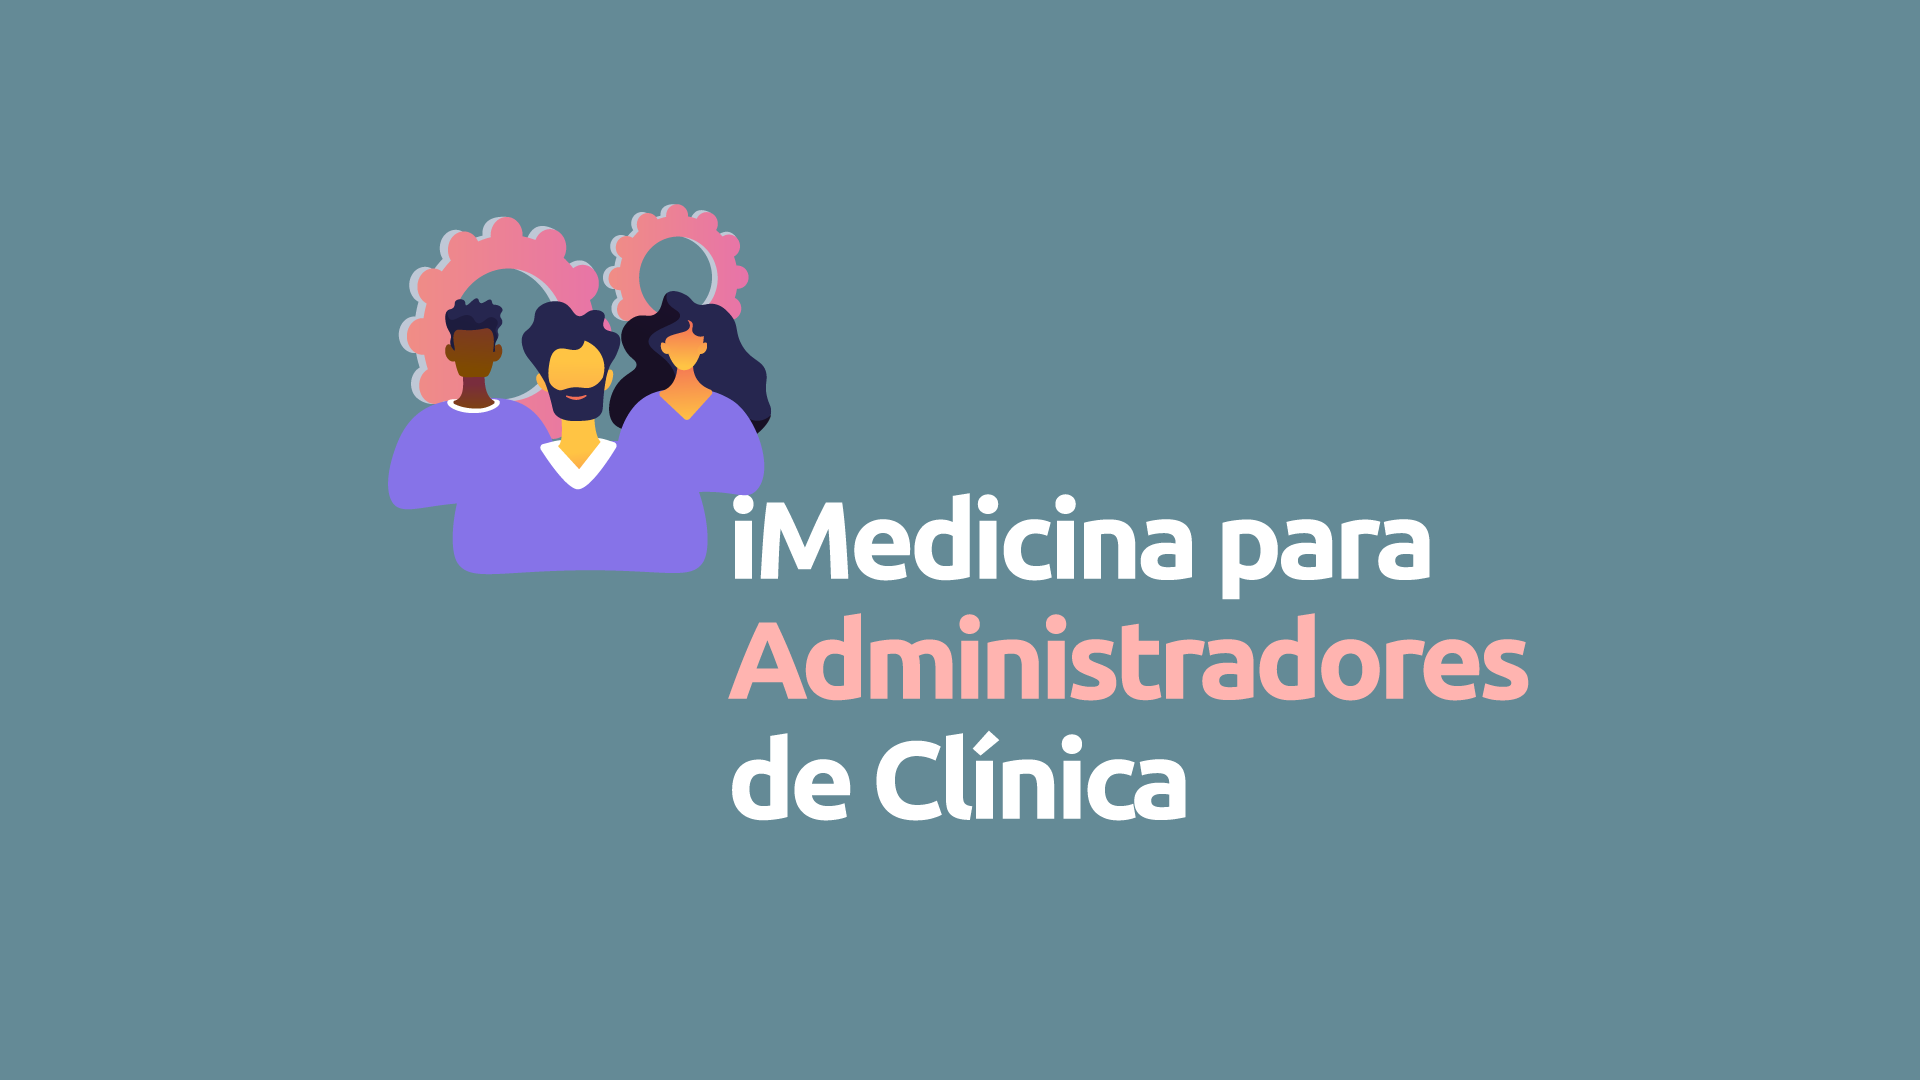 iMedicina para Administradores de Clínica: Como funciona?